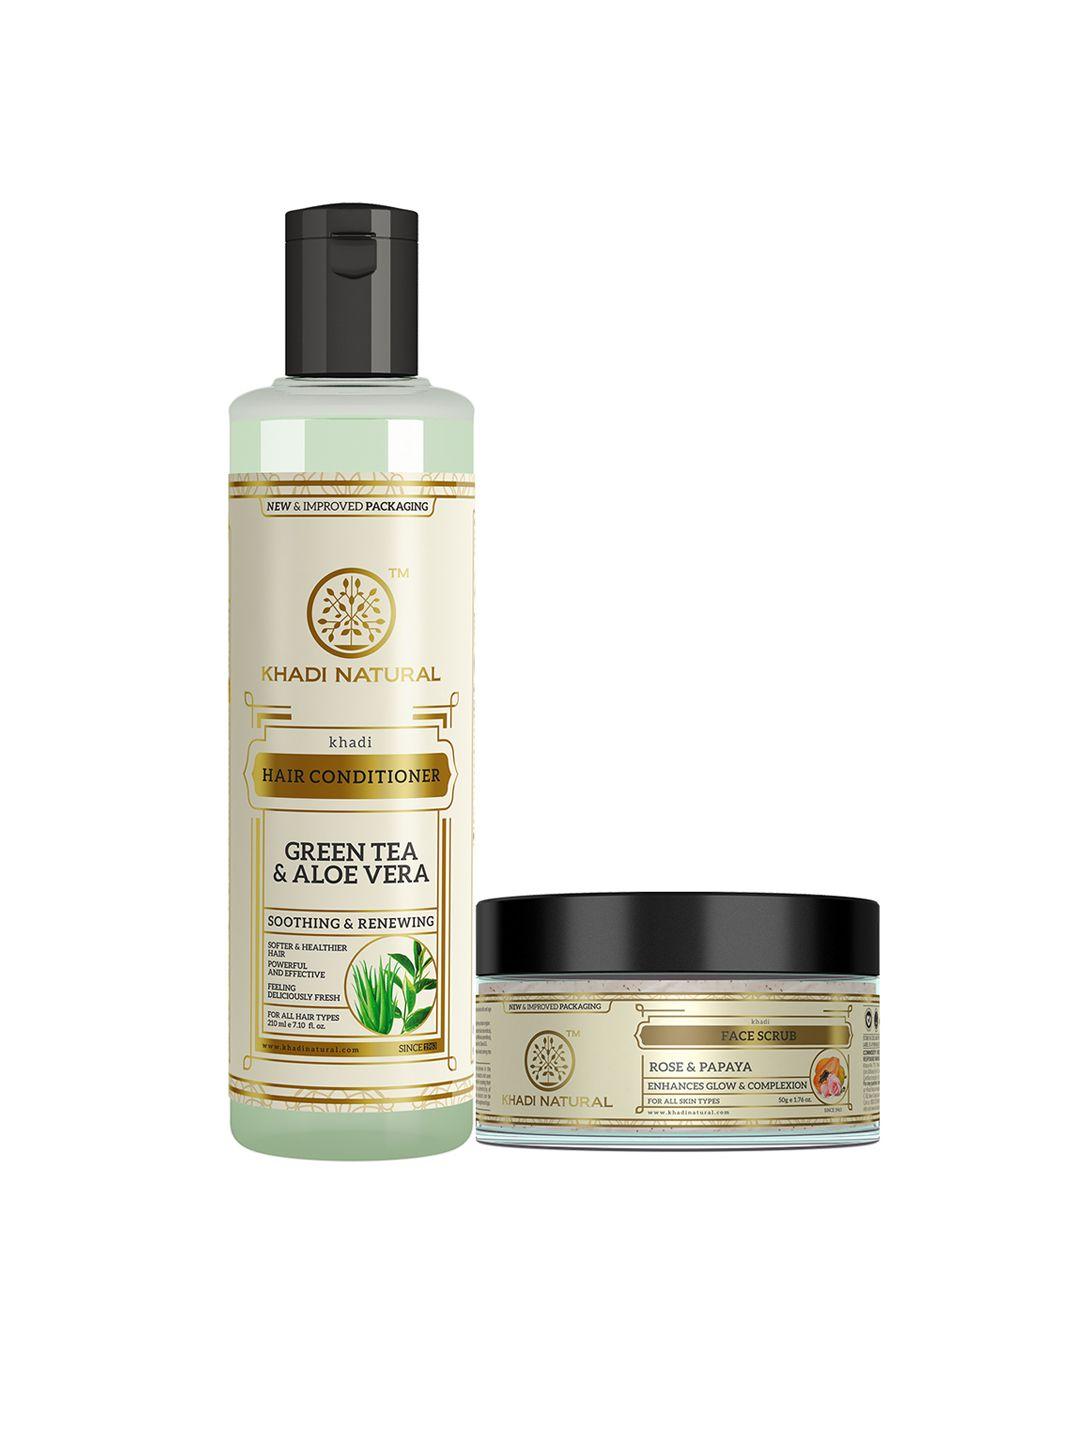 khadi natural ayurvedic green tea & aloevera herbal hair oil & face scrub